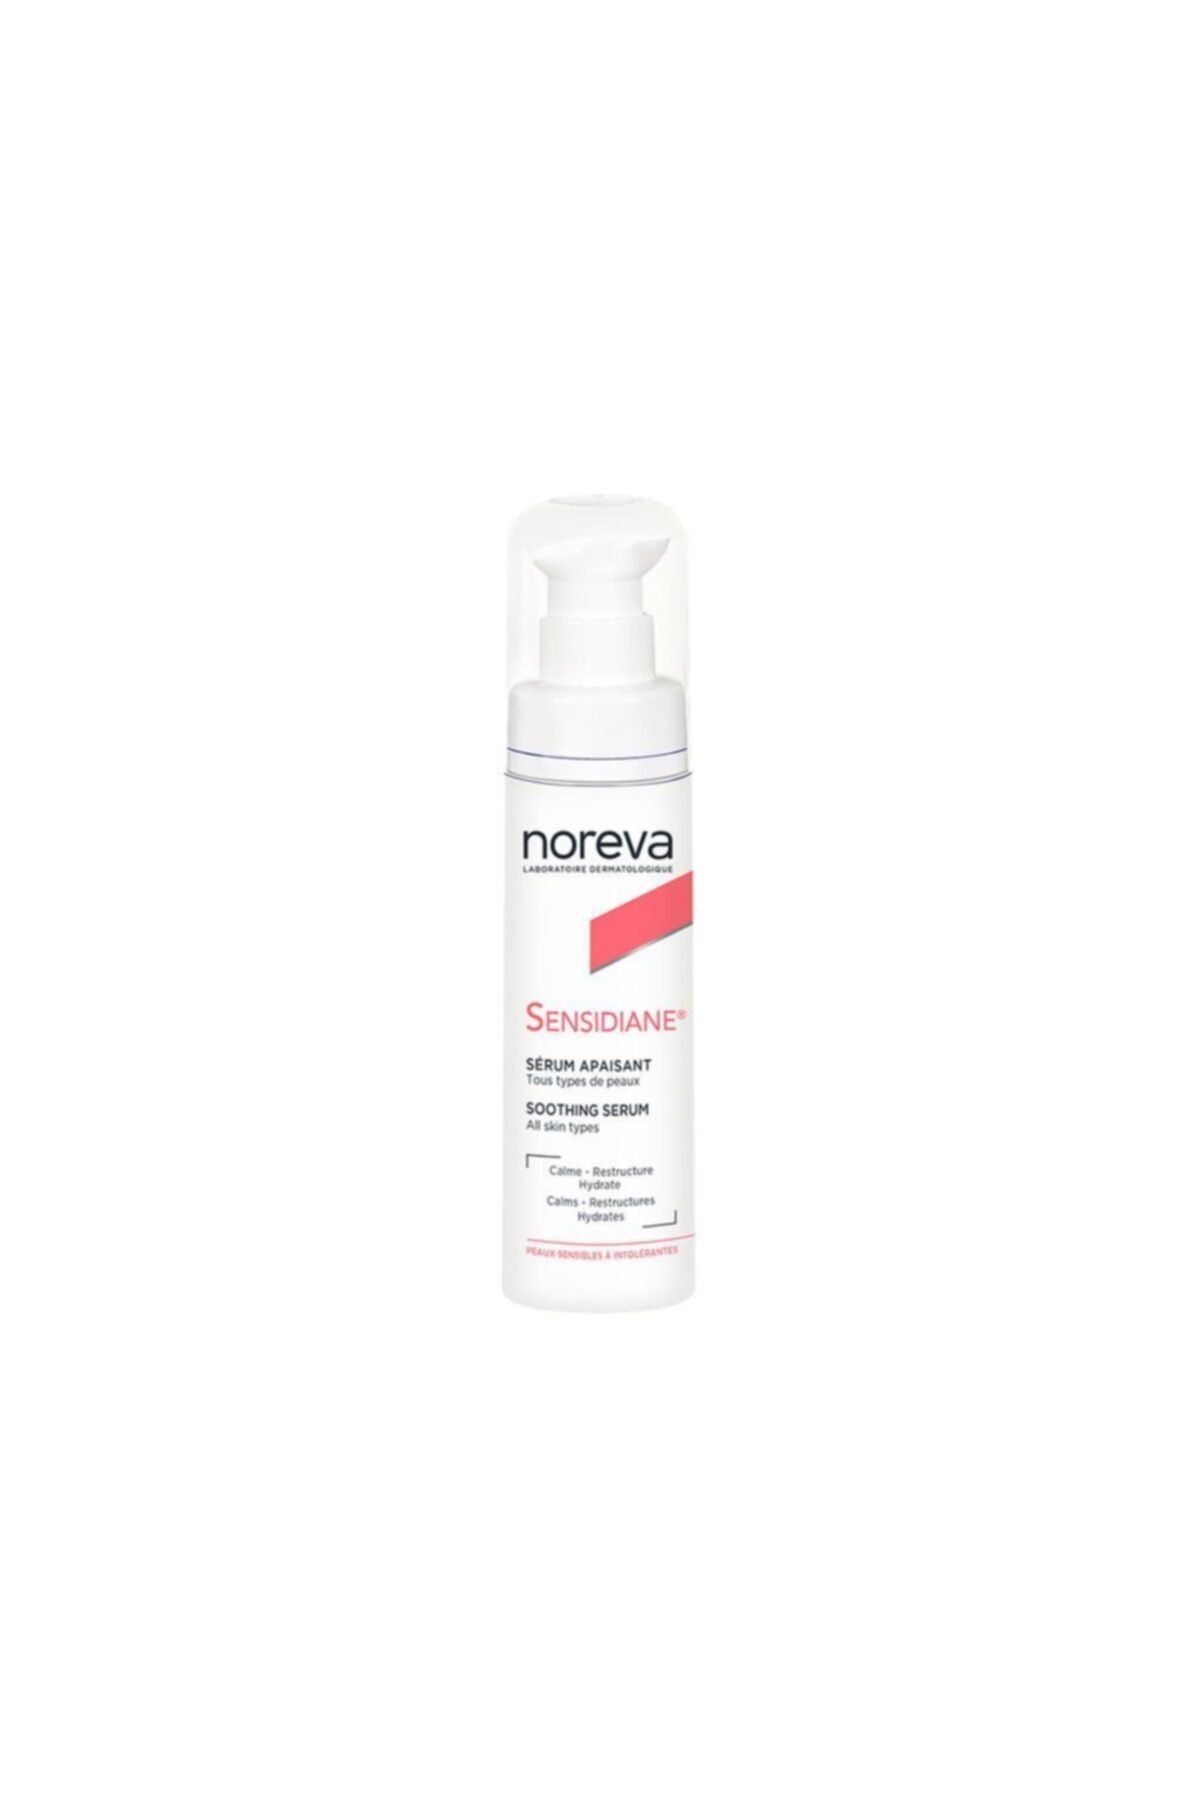 Noreva Sensidiane Intensive Serum In Tolerant Skin 30ml - Tolerans Yükseltmeye Yardımcı Yoğun Serum